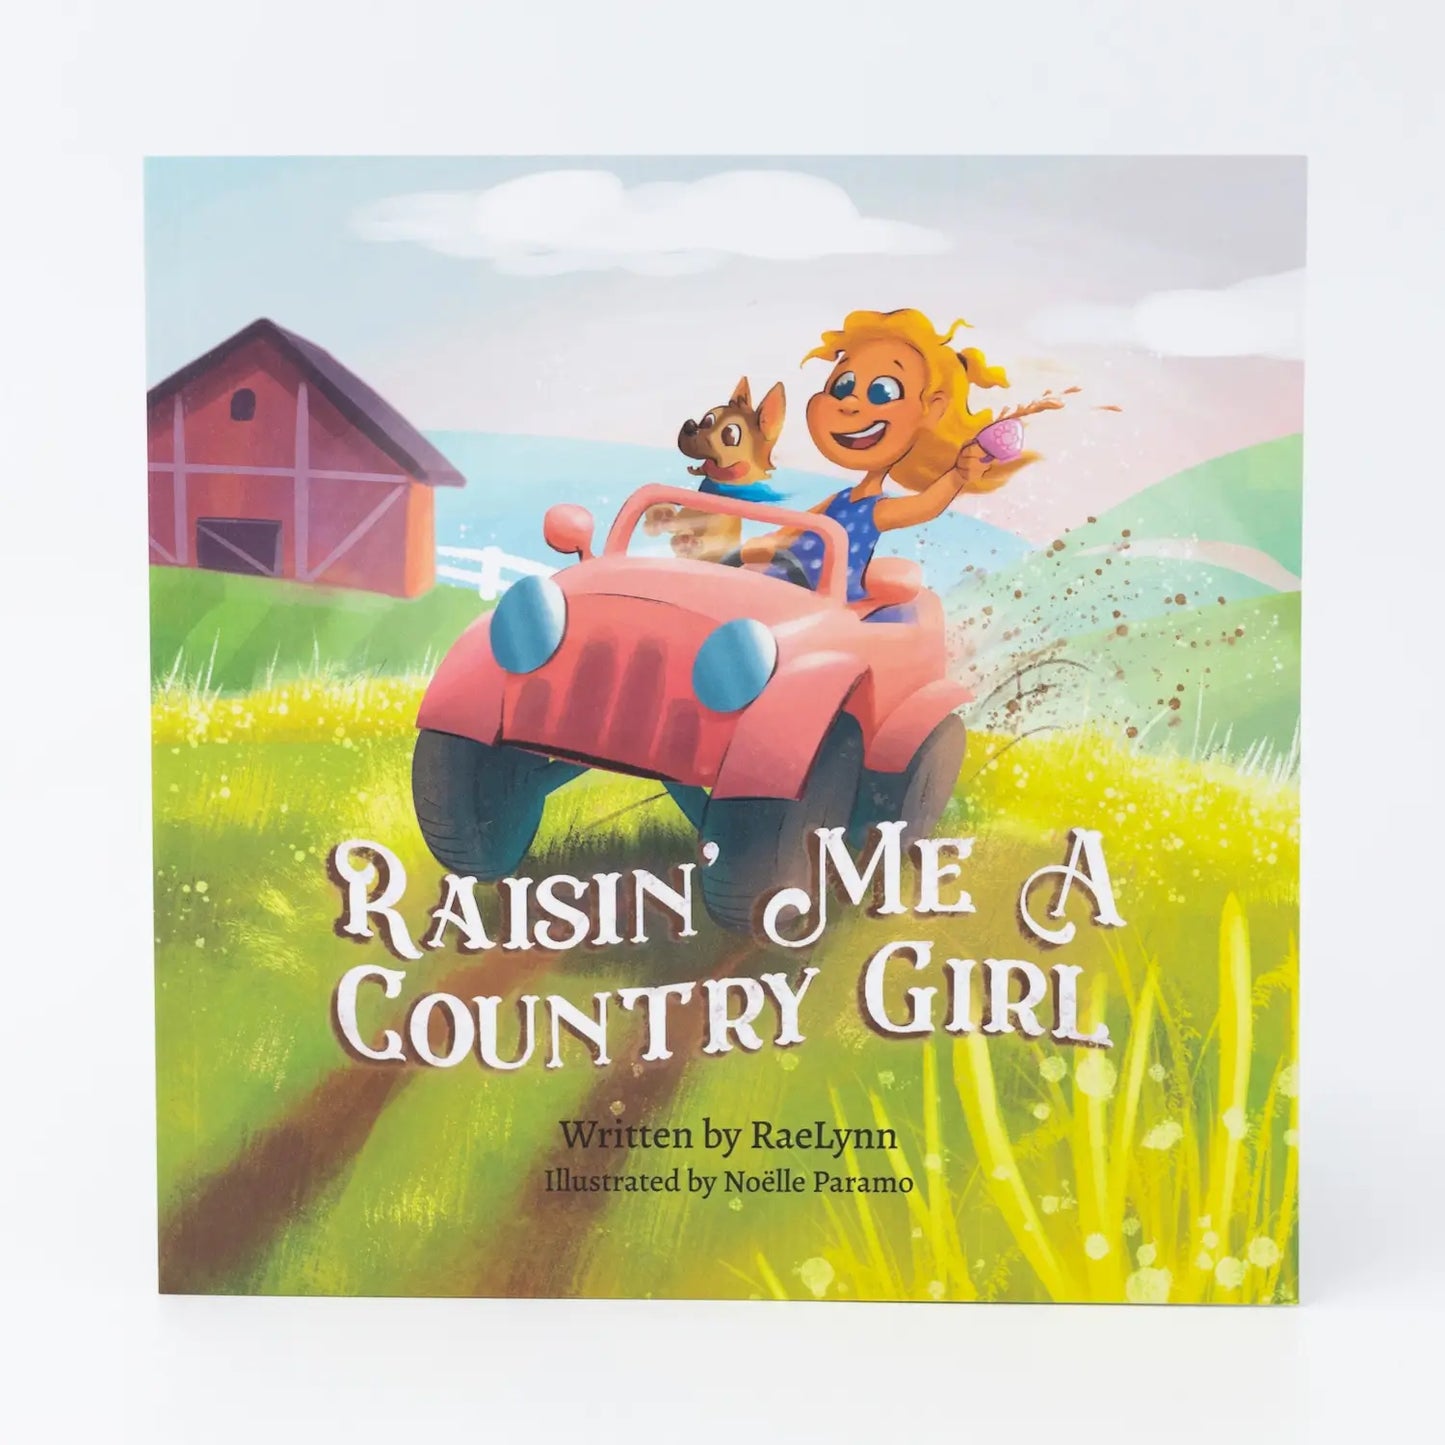 Raisin' Me a Country Girl